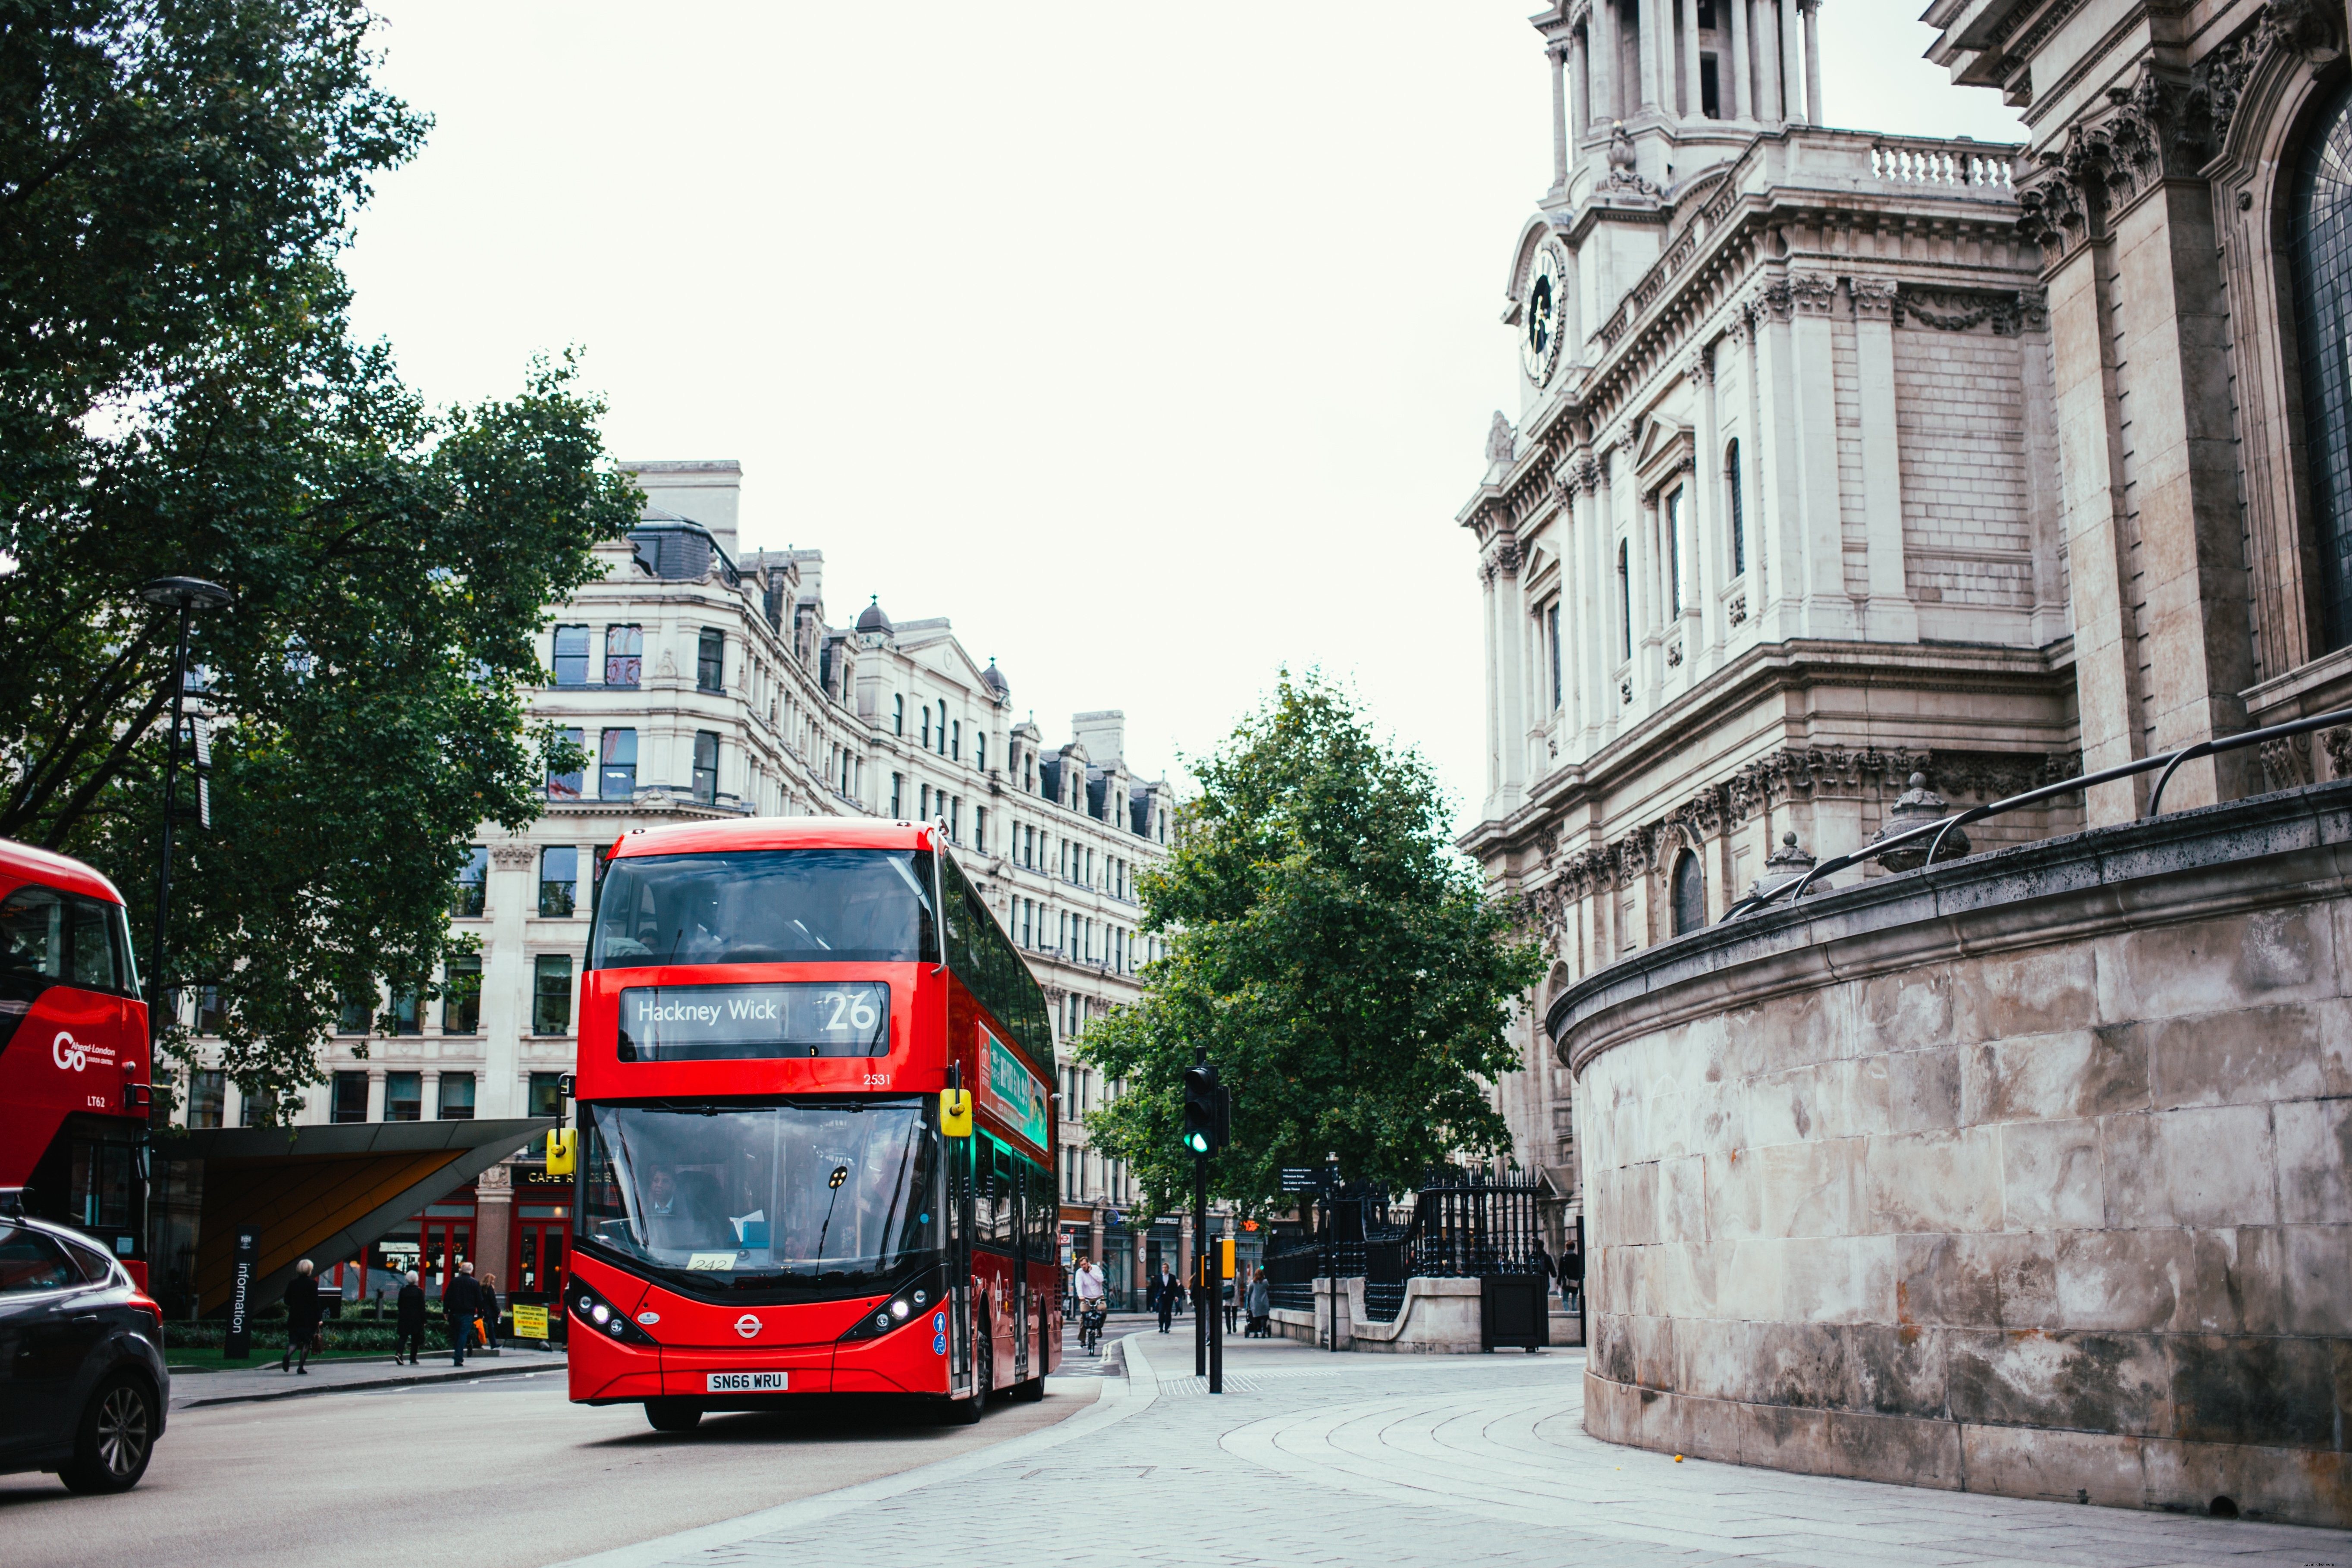 Foto do ônibus de dois andares em Londres